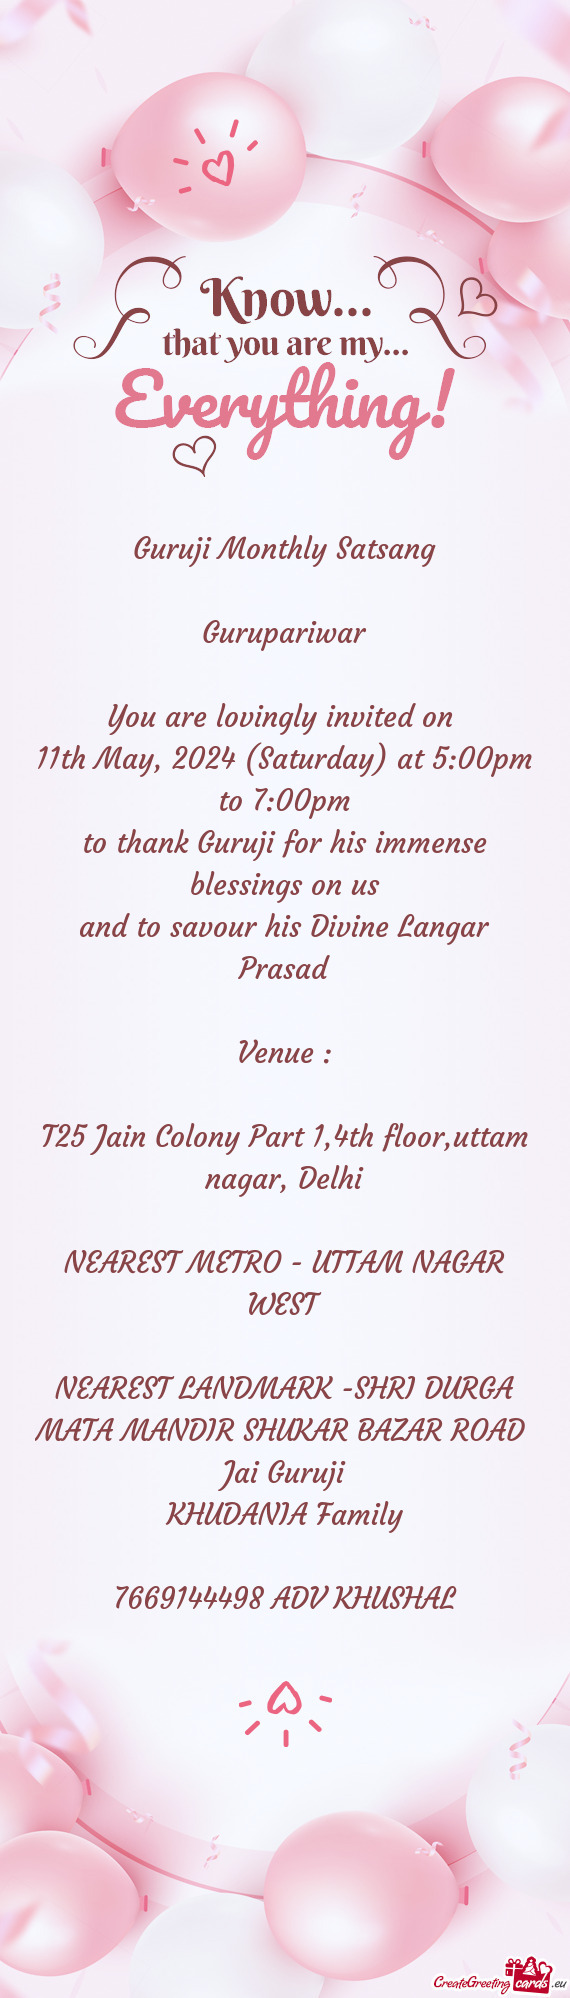 T25 Jain Colony Part 1,4th floor,uttam nagar, Delhi